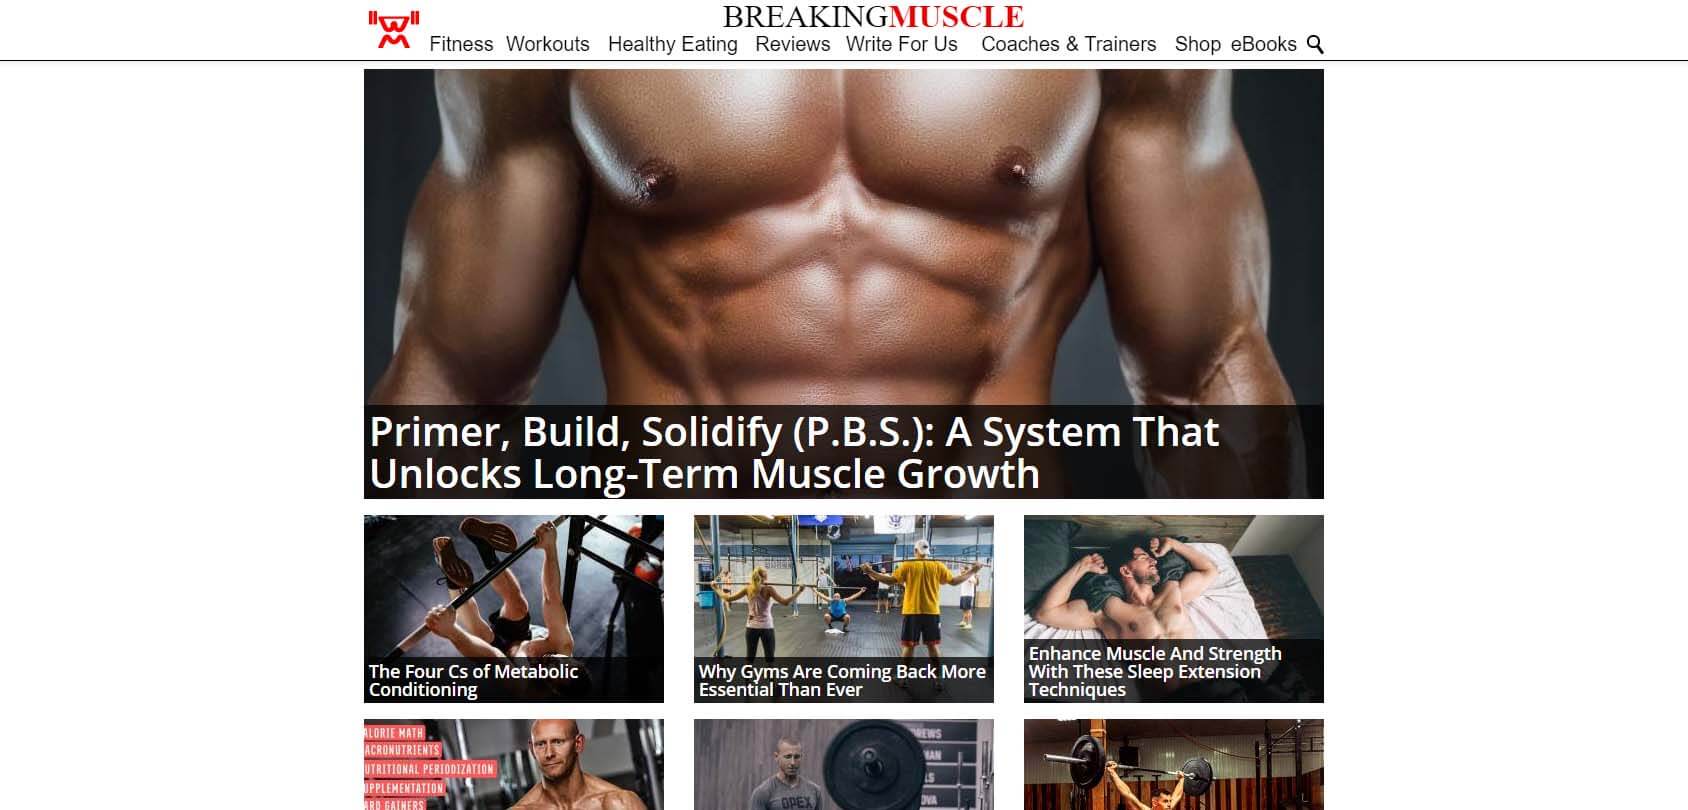 Breaking Muscle Homepage